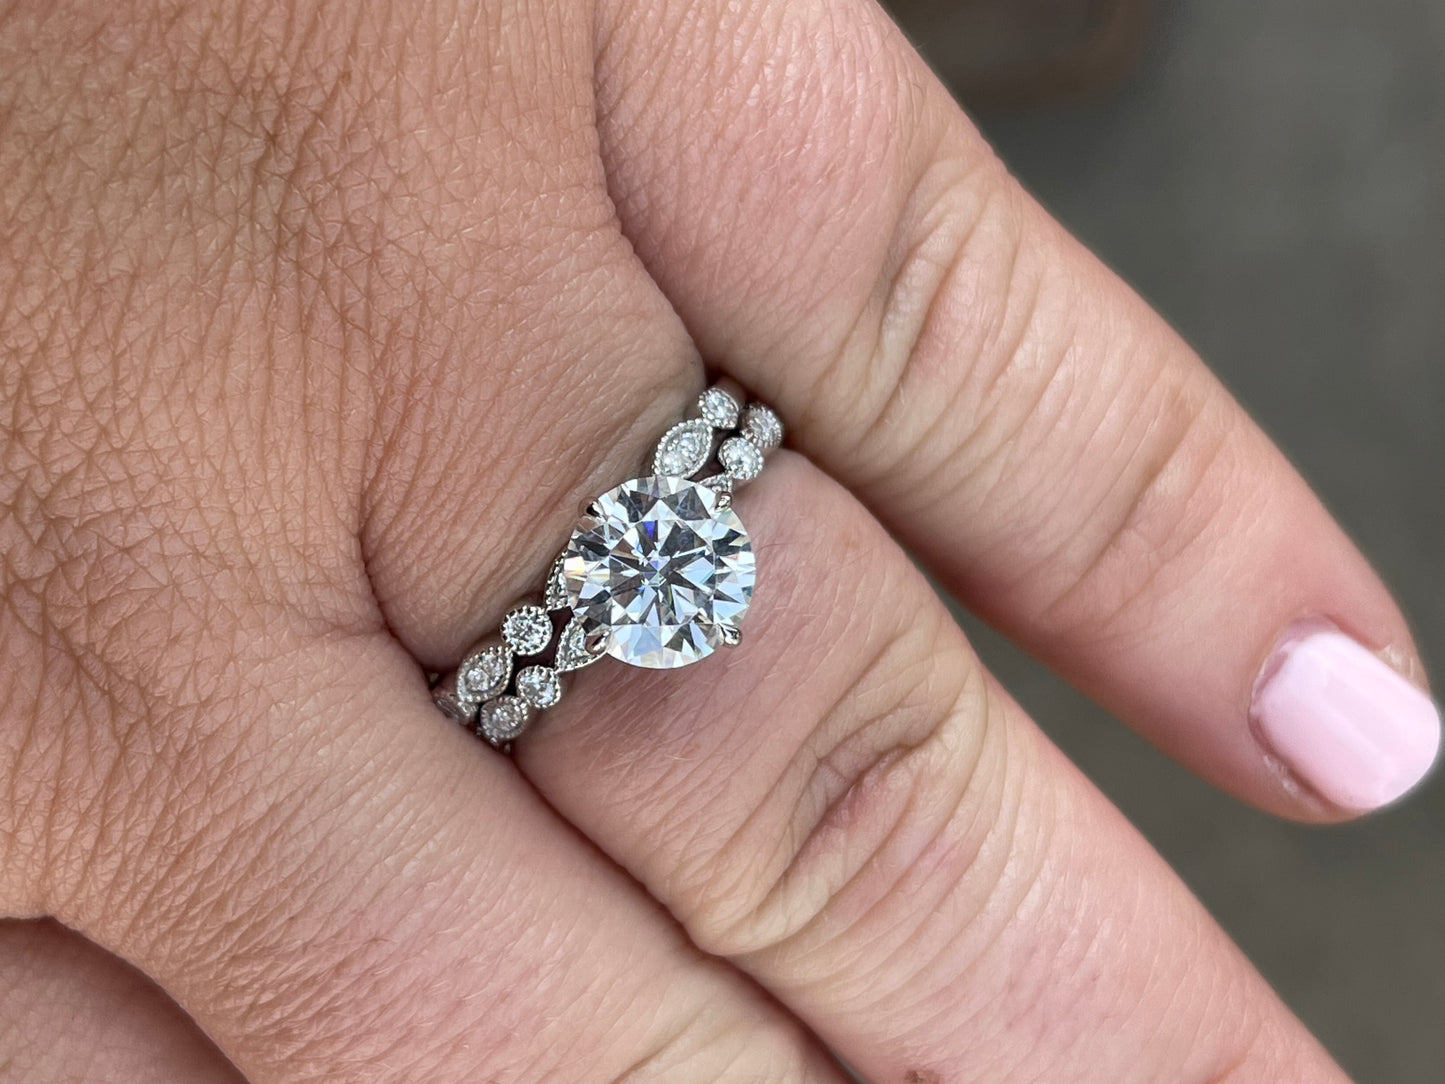 Mariposa Engagement Ring